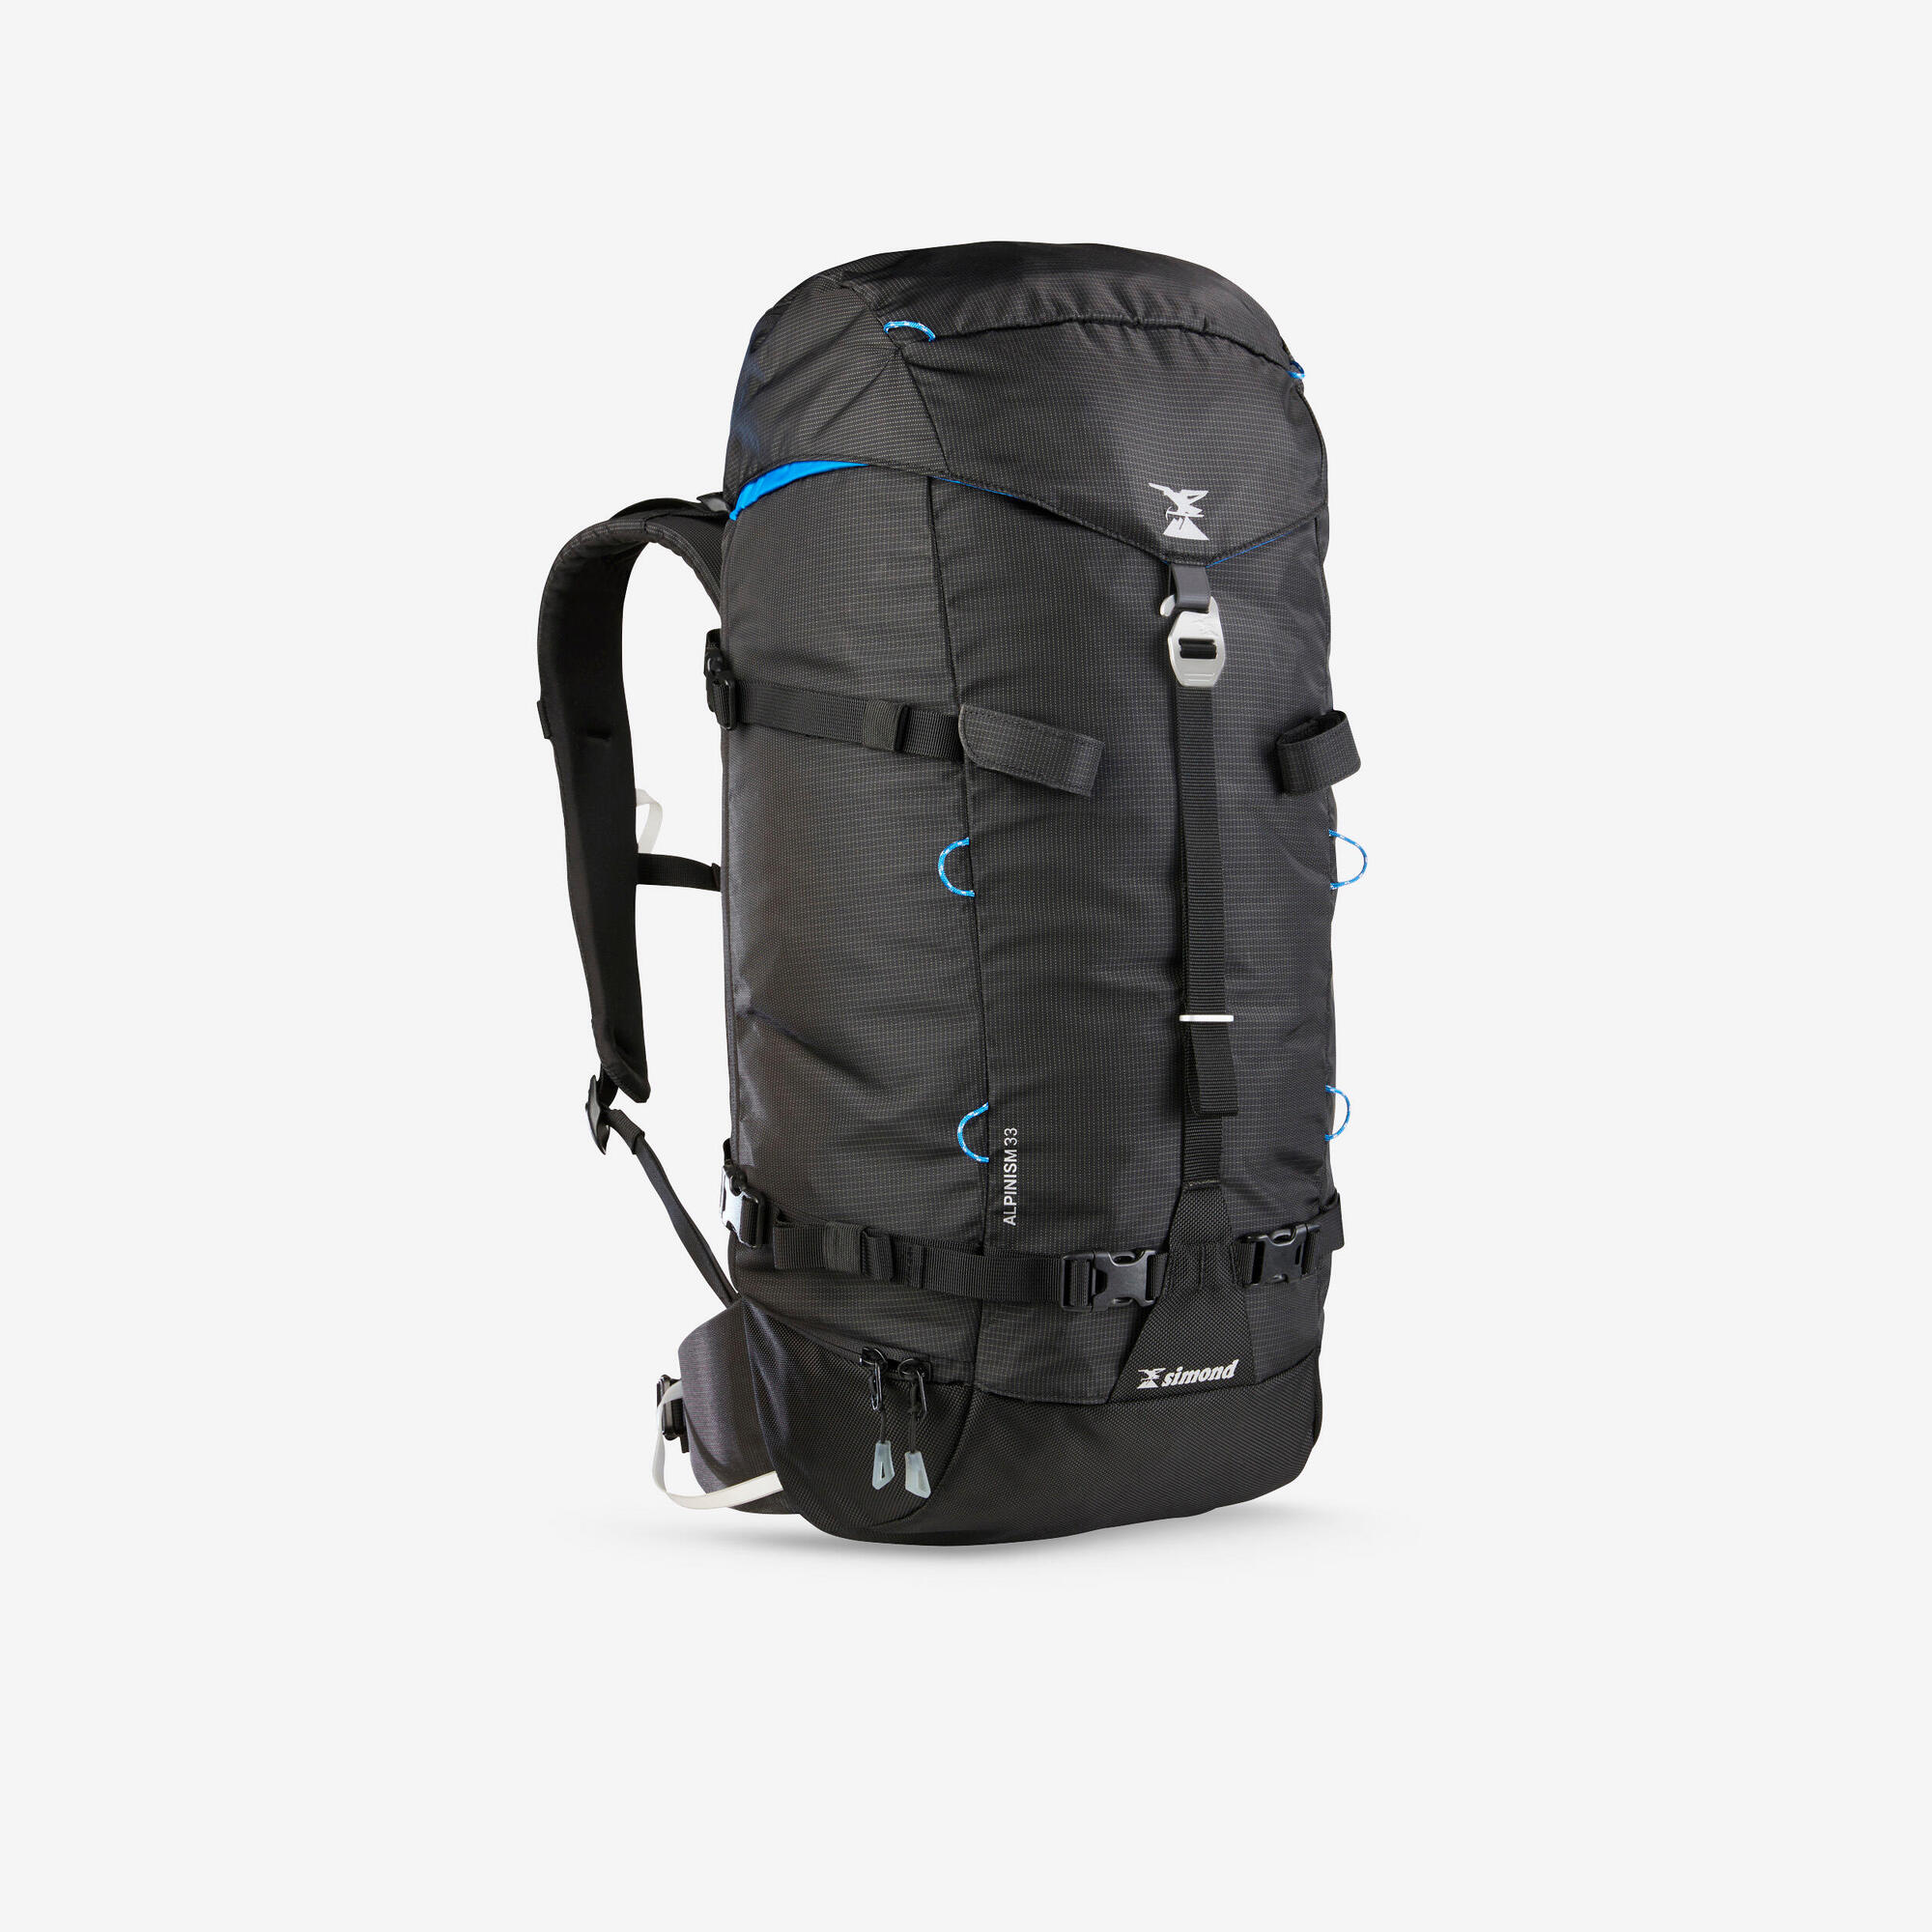 [問題] 請推薦適合2-3天快速登山用的背包